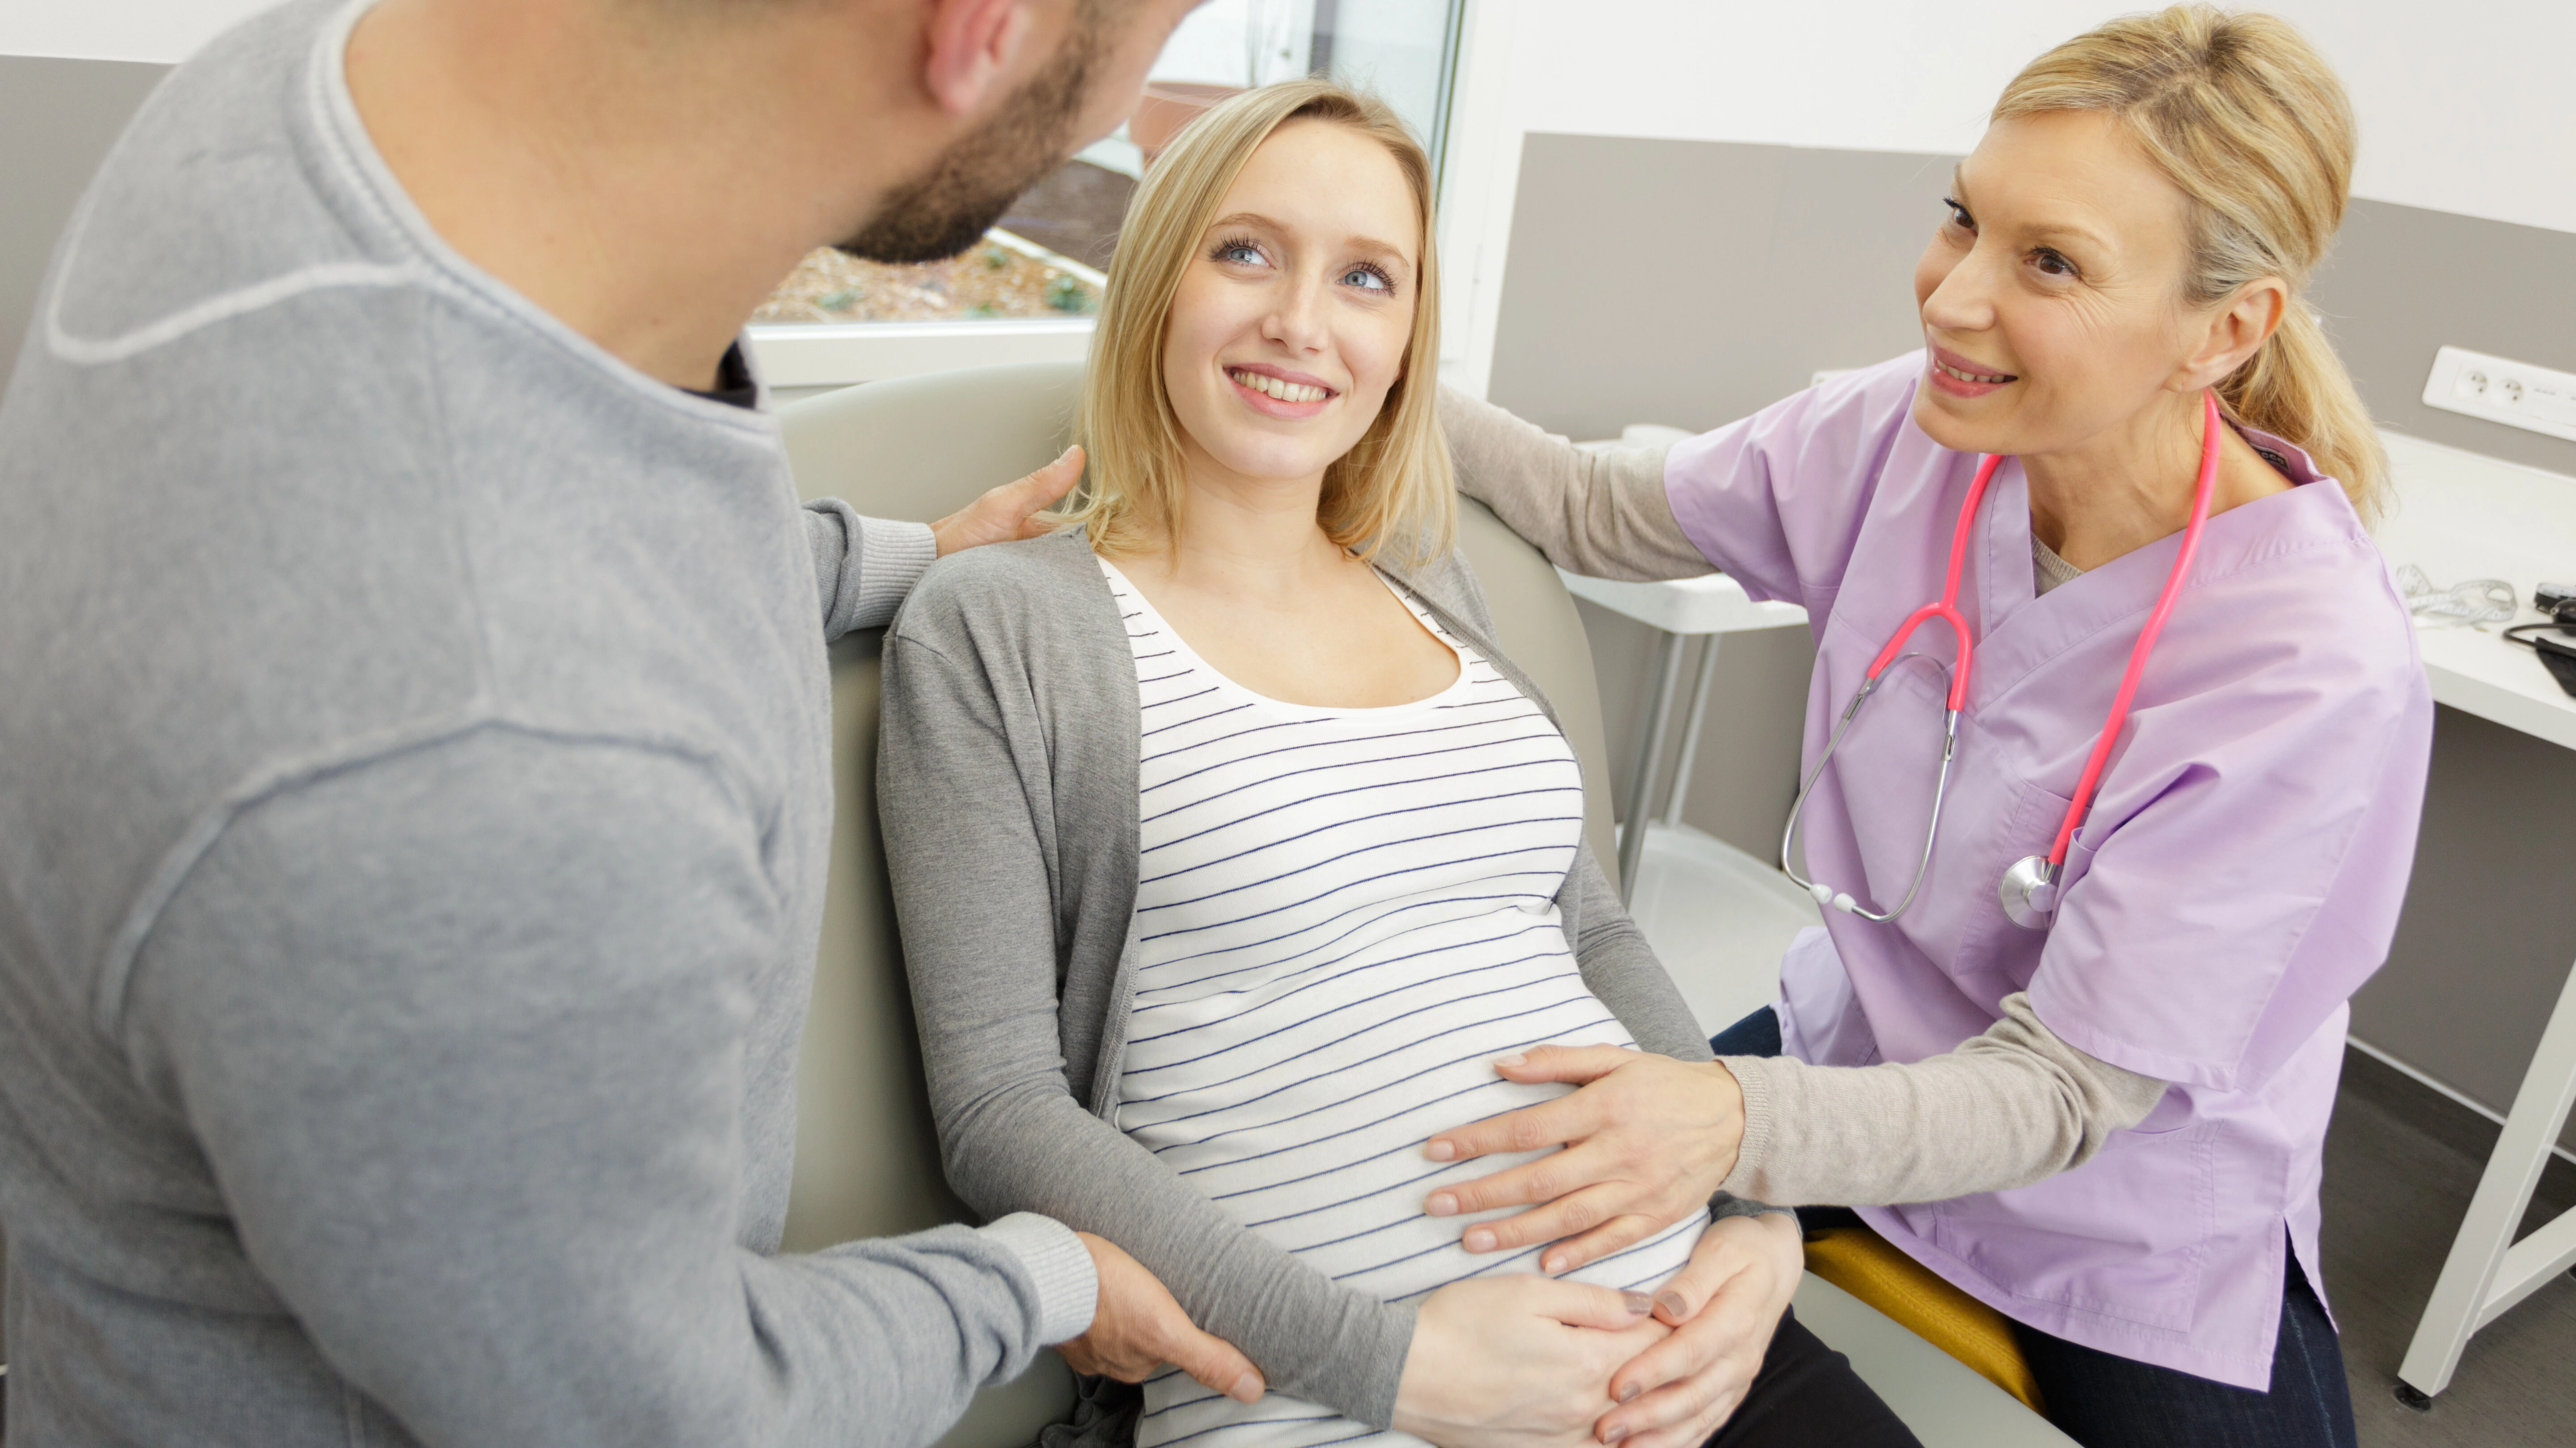 Eine Hebamme fasst auf den Bauch einer Schwangeren. Beide schauen lächelnd zur männlichen Begleitung.